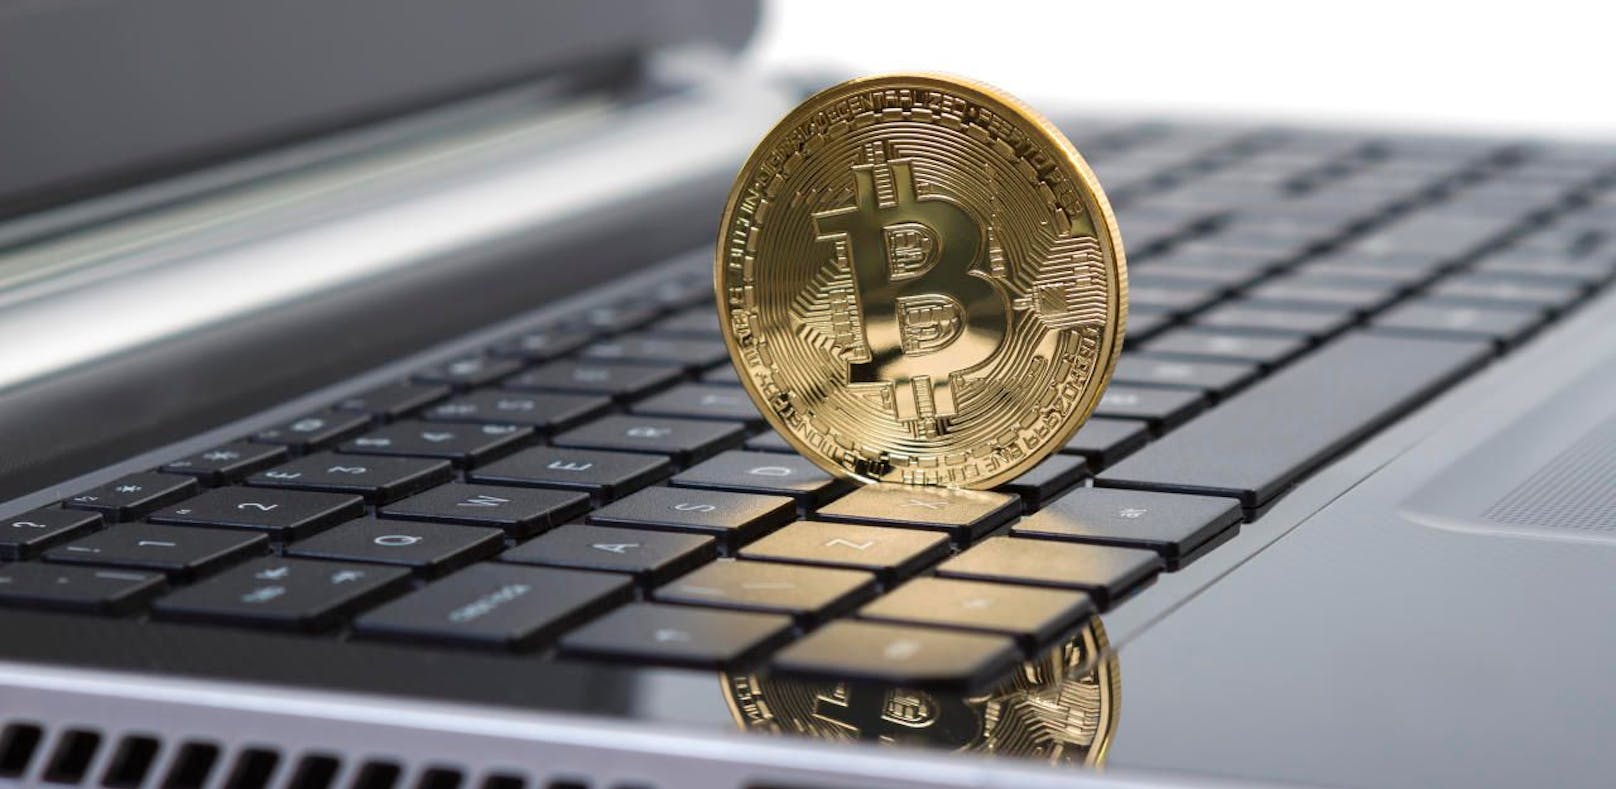 Hacker klauen Bitcoins im Wert von 70 Mio US-Dollar